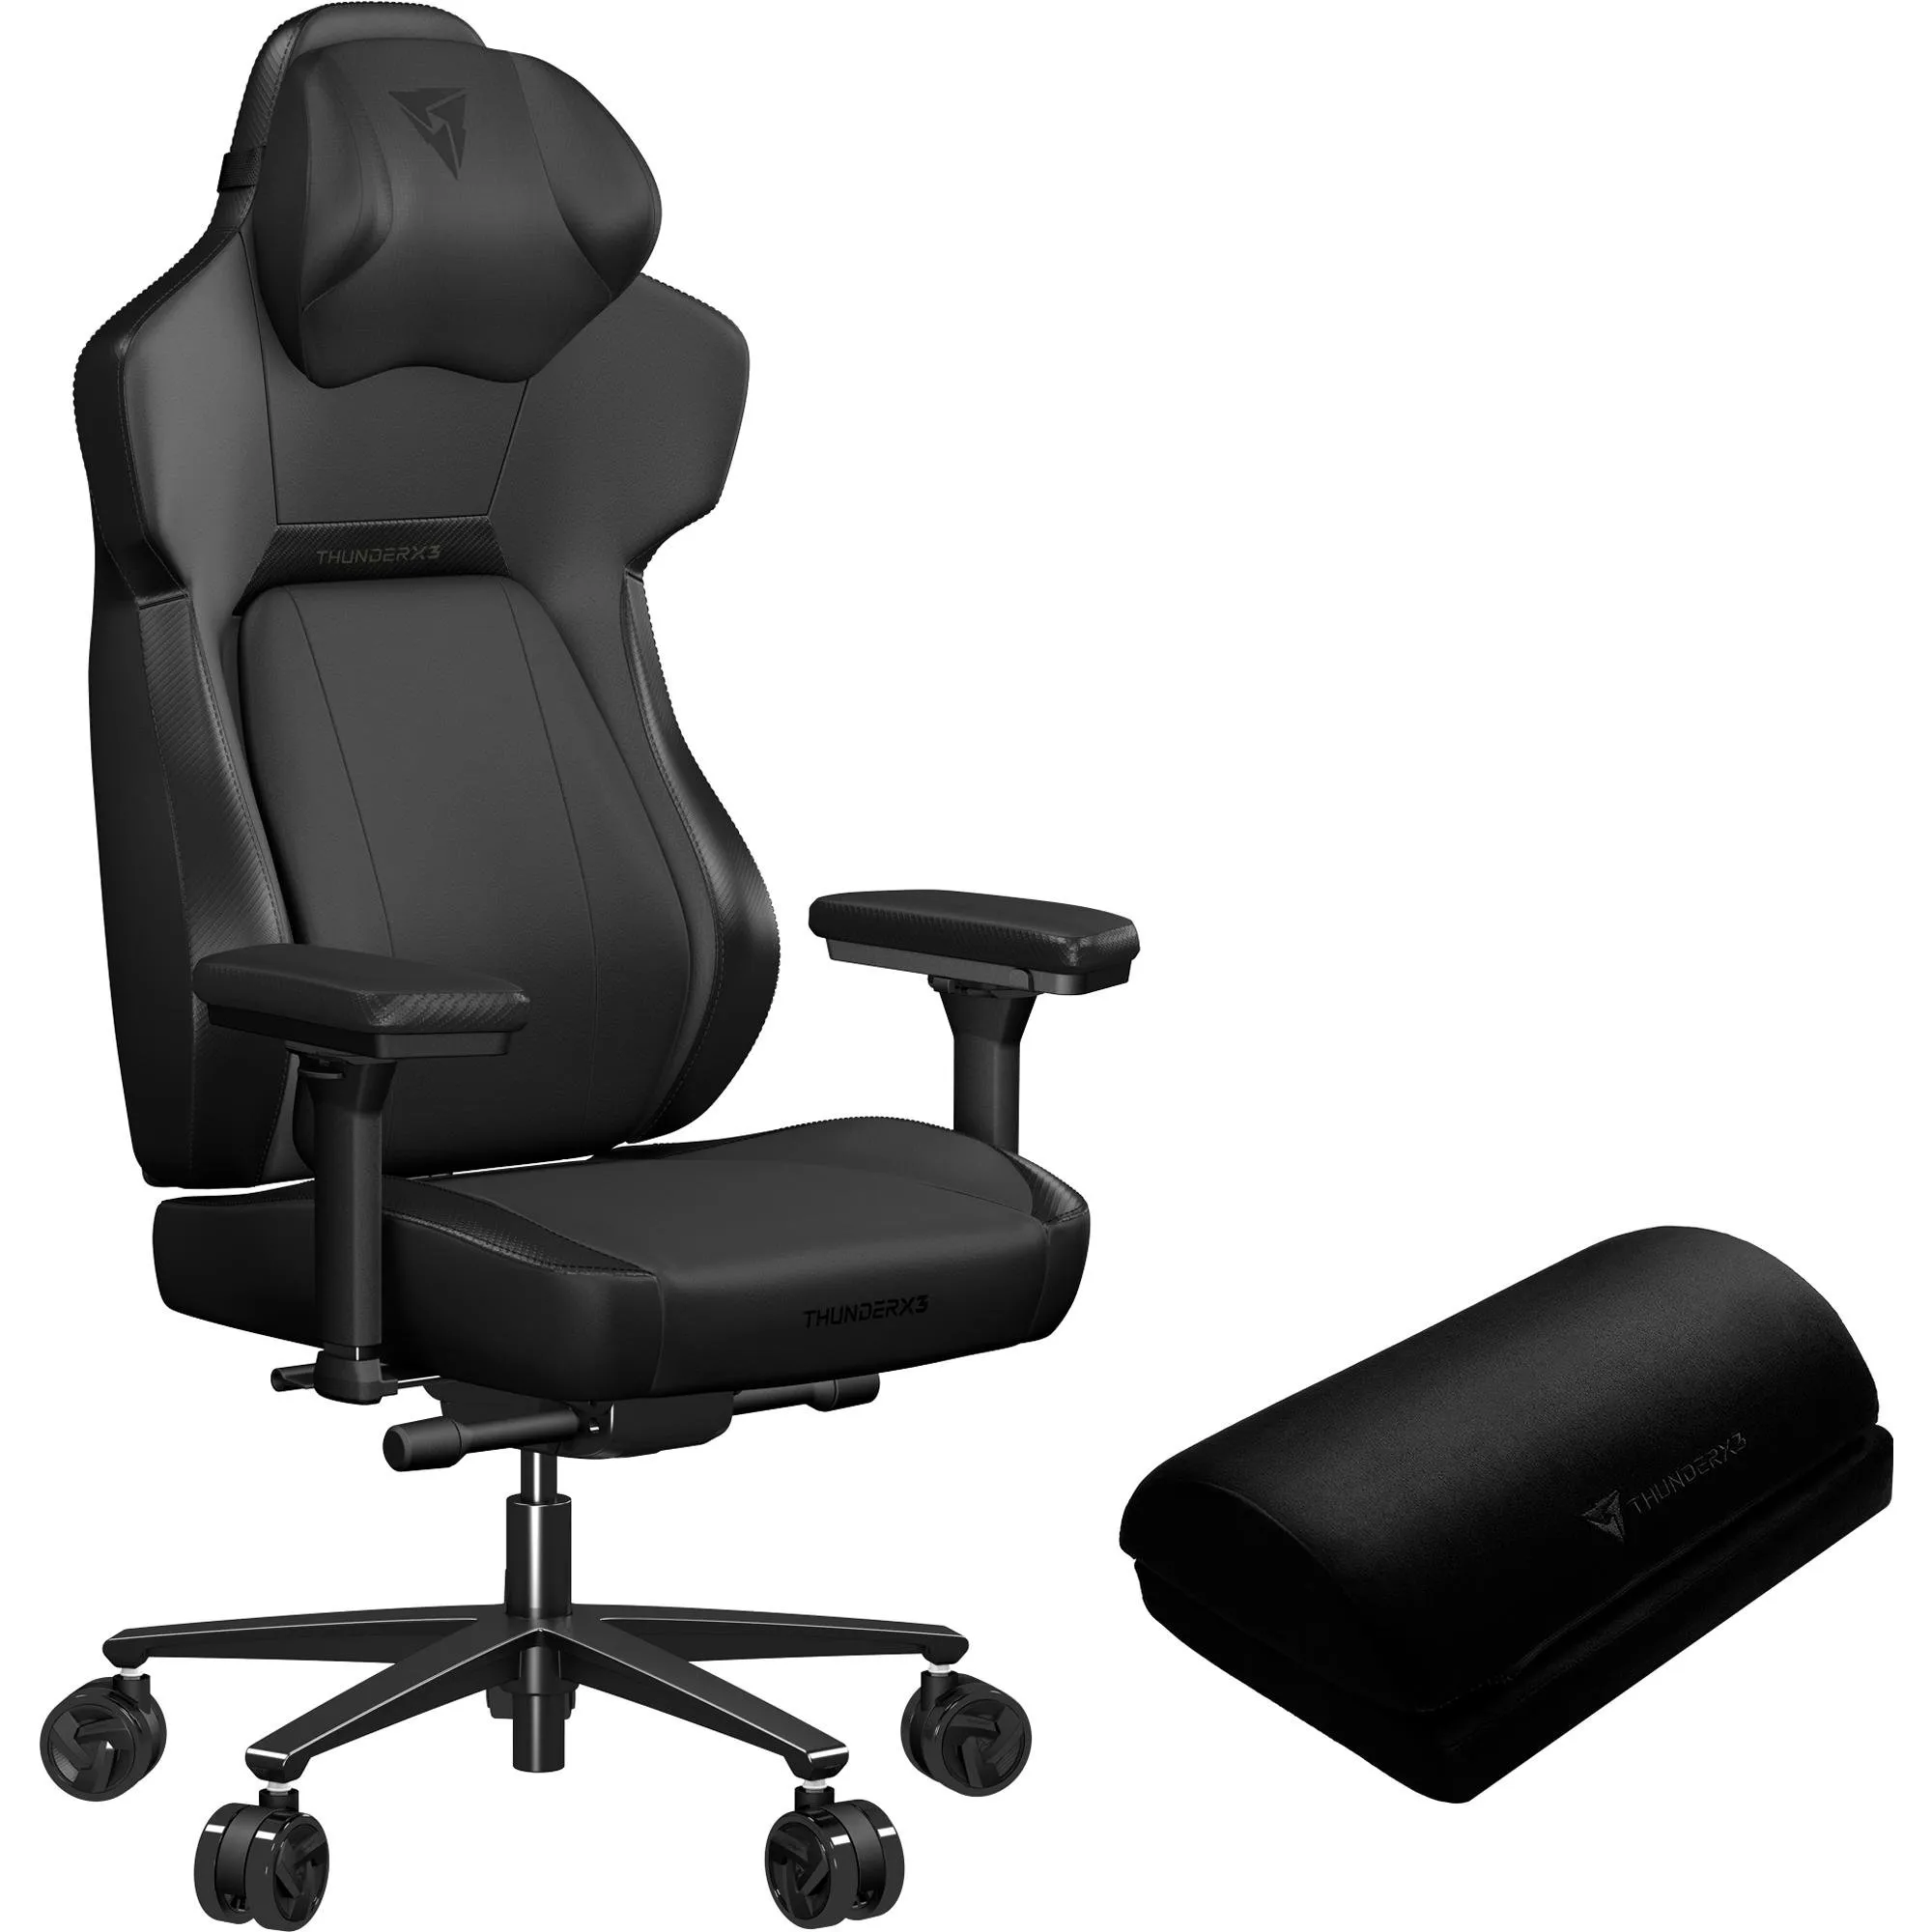 Cadeira Gamer ThunderX3 CORE Modern Preta por 3.099,90 à vista no boleto/pix ou parcele em até 12x sem juros. Compre na loja Thunderx3!